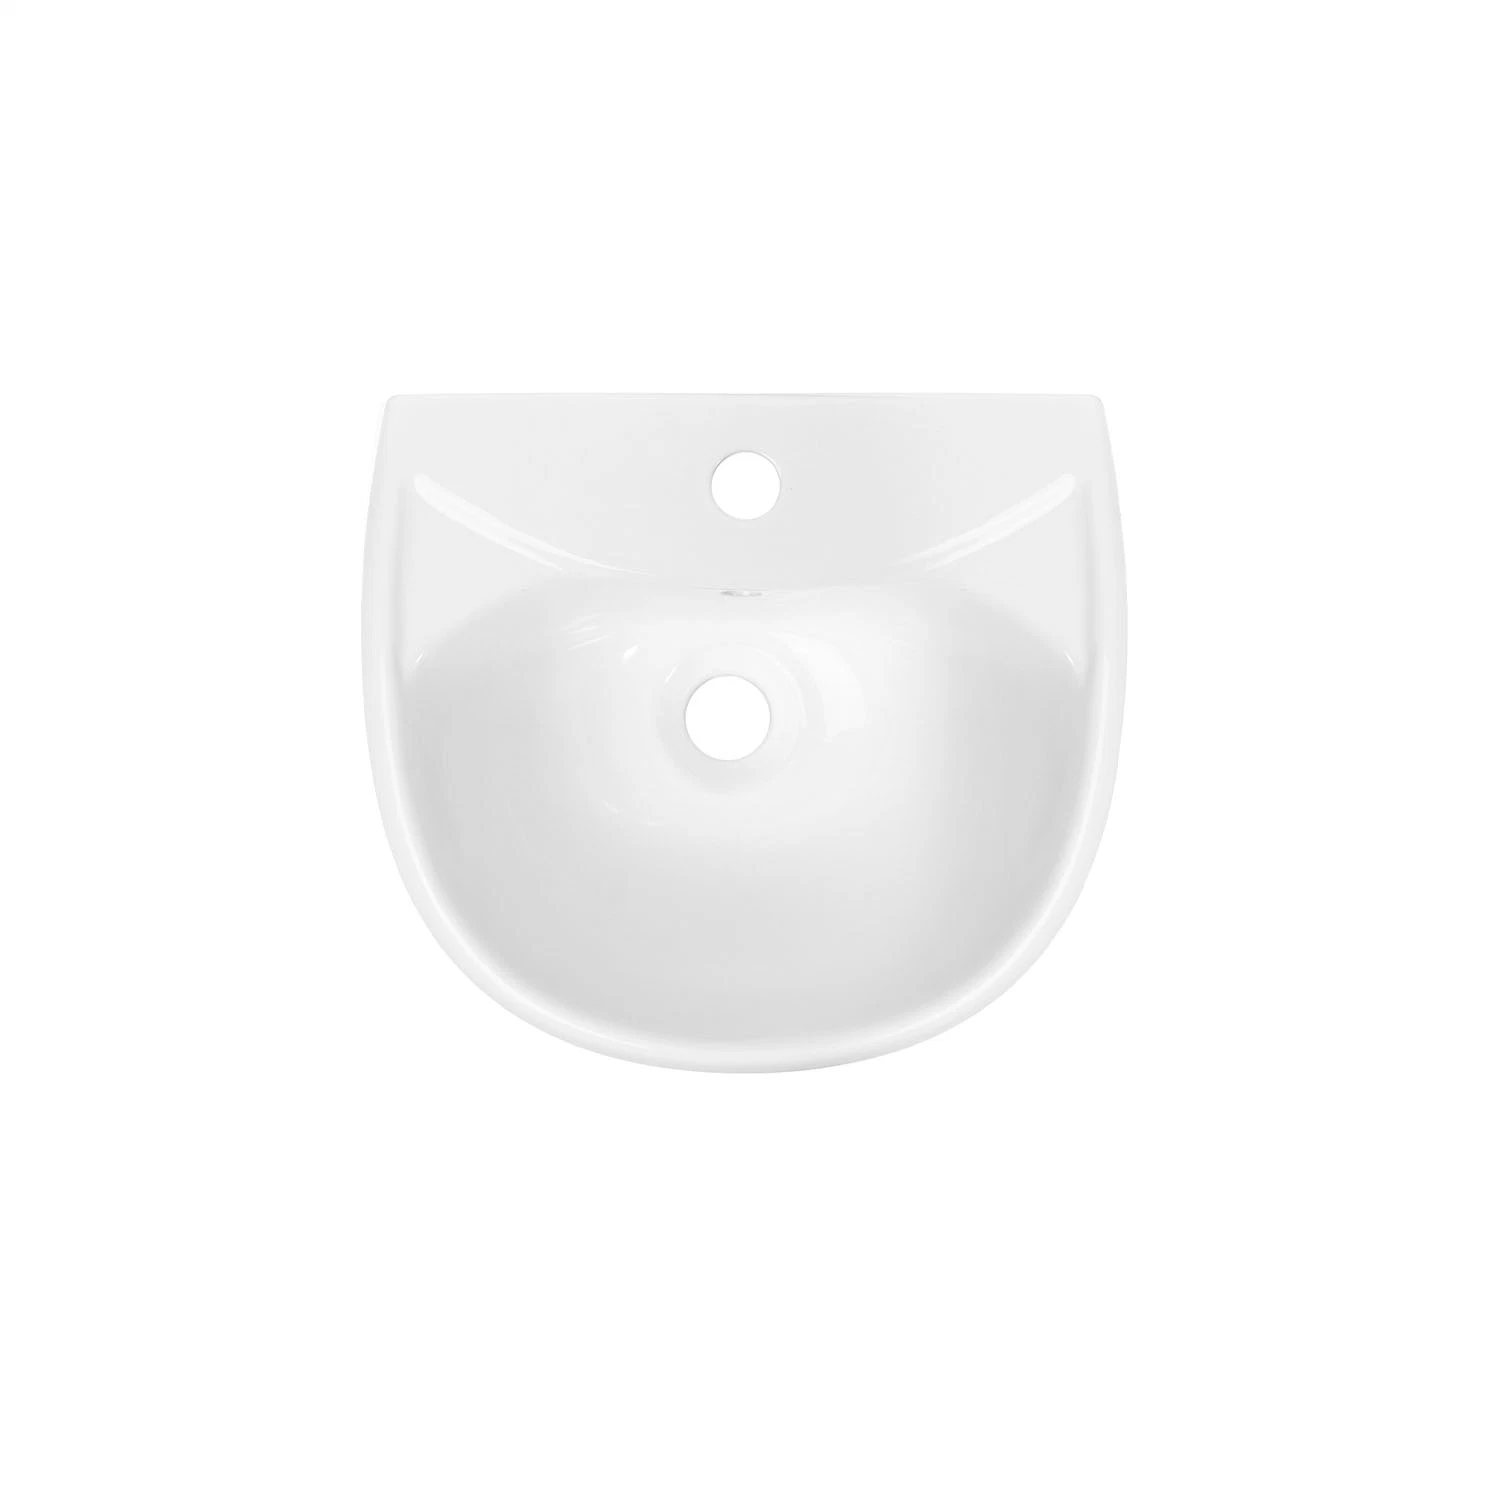 WC cUPC Ceramic lavatorio certificado hecho a mano diseño compacto Blanco Oval Cuarto de baño de Porcelana lavabo de pared a pared lavabo independiente